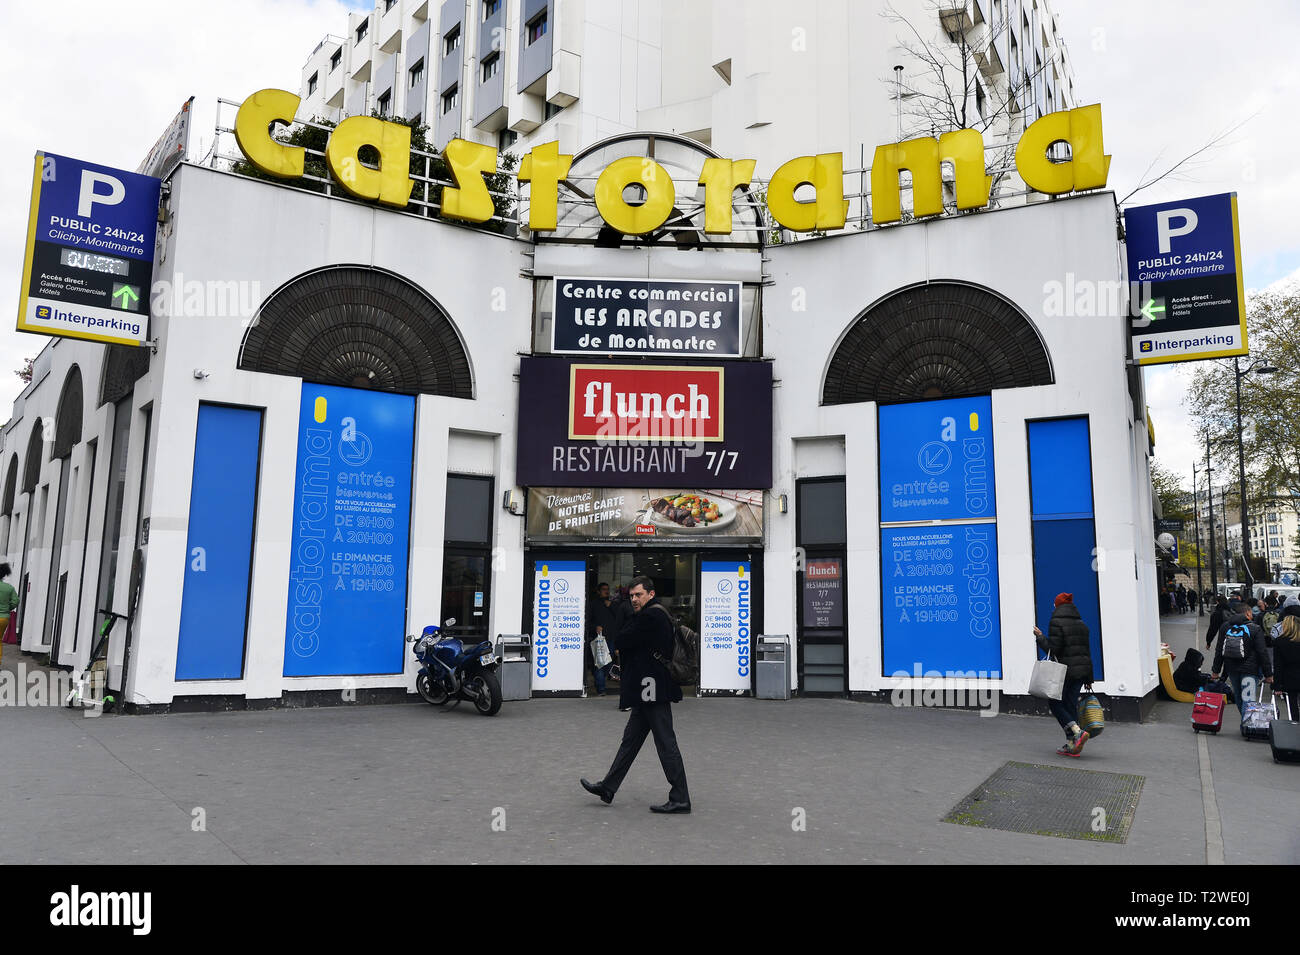 Castorama store - Place de Clichy - Paris Stock Photo - Alamy